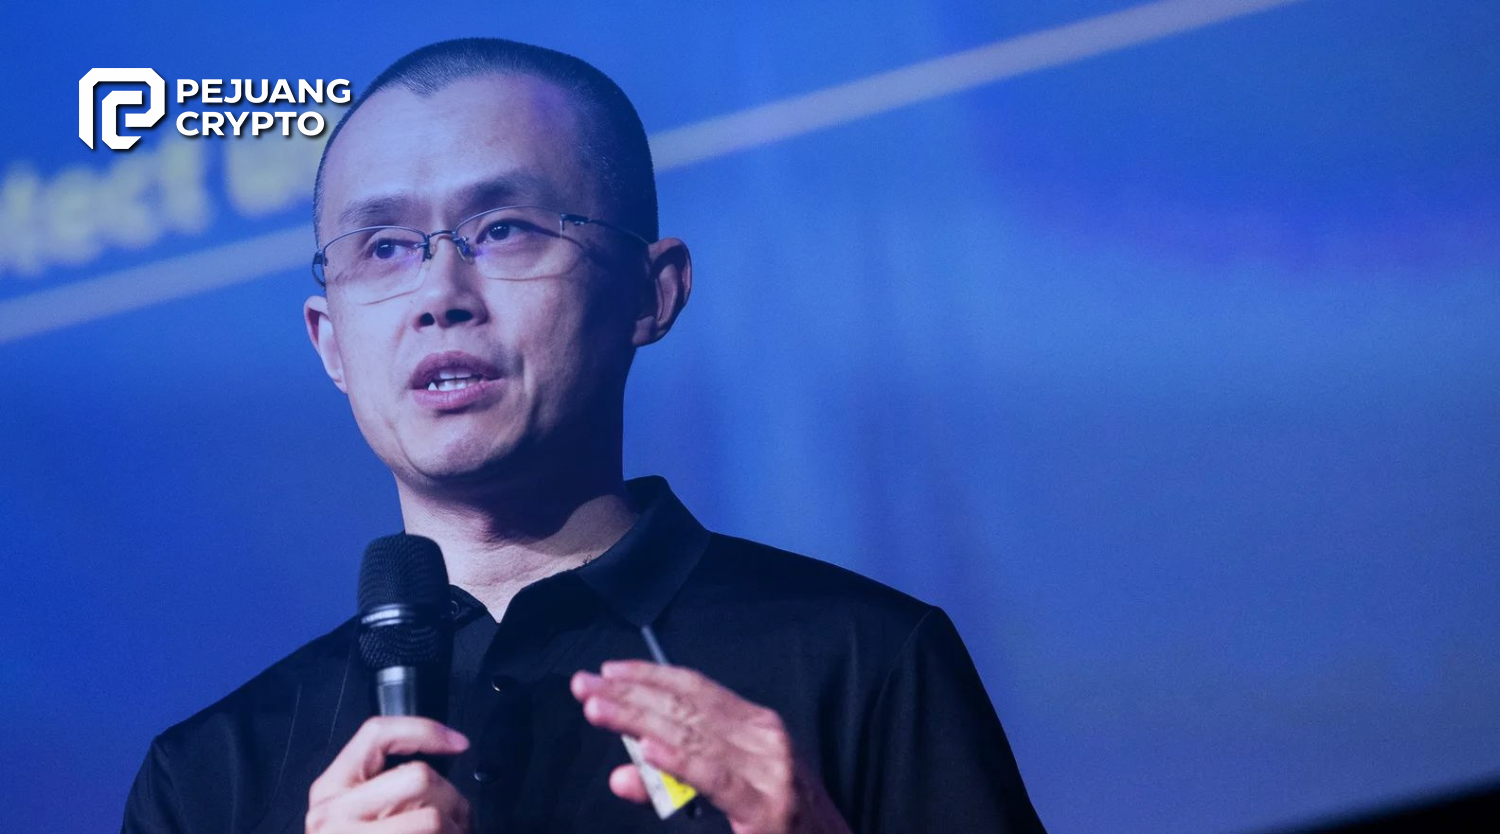 Setelah Resign dari Binance, Changpeng Zhao Dapat Bebas dengan Jaminan $175 Juta